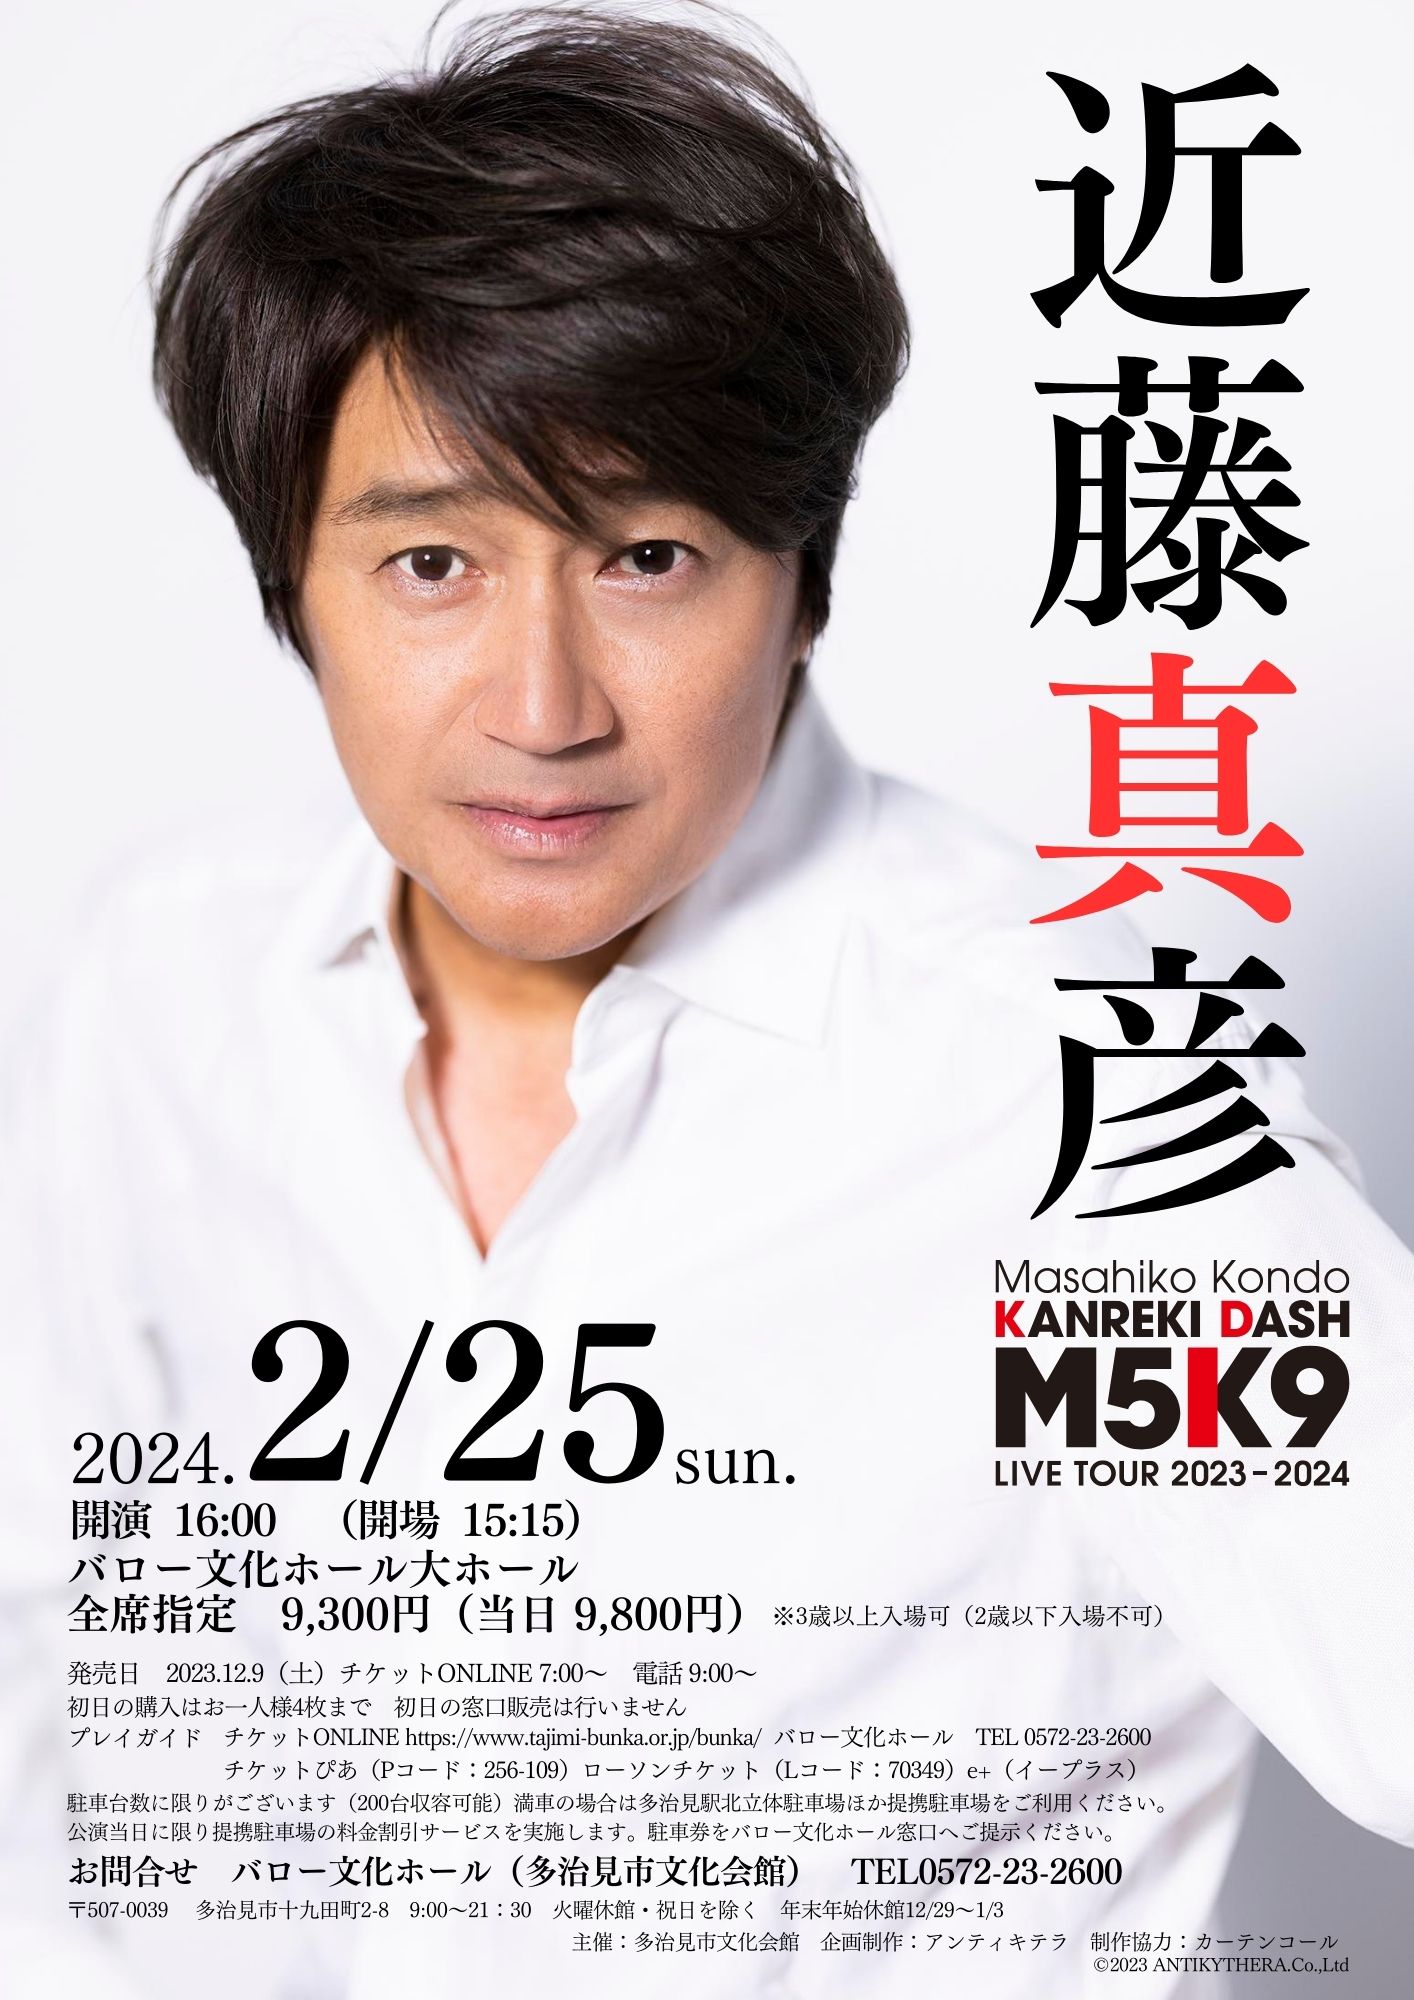 Masahiko Kondo KANREKI DASH 「M5K9」LIVE TOUR 2023-2024